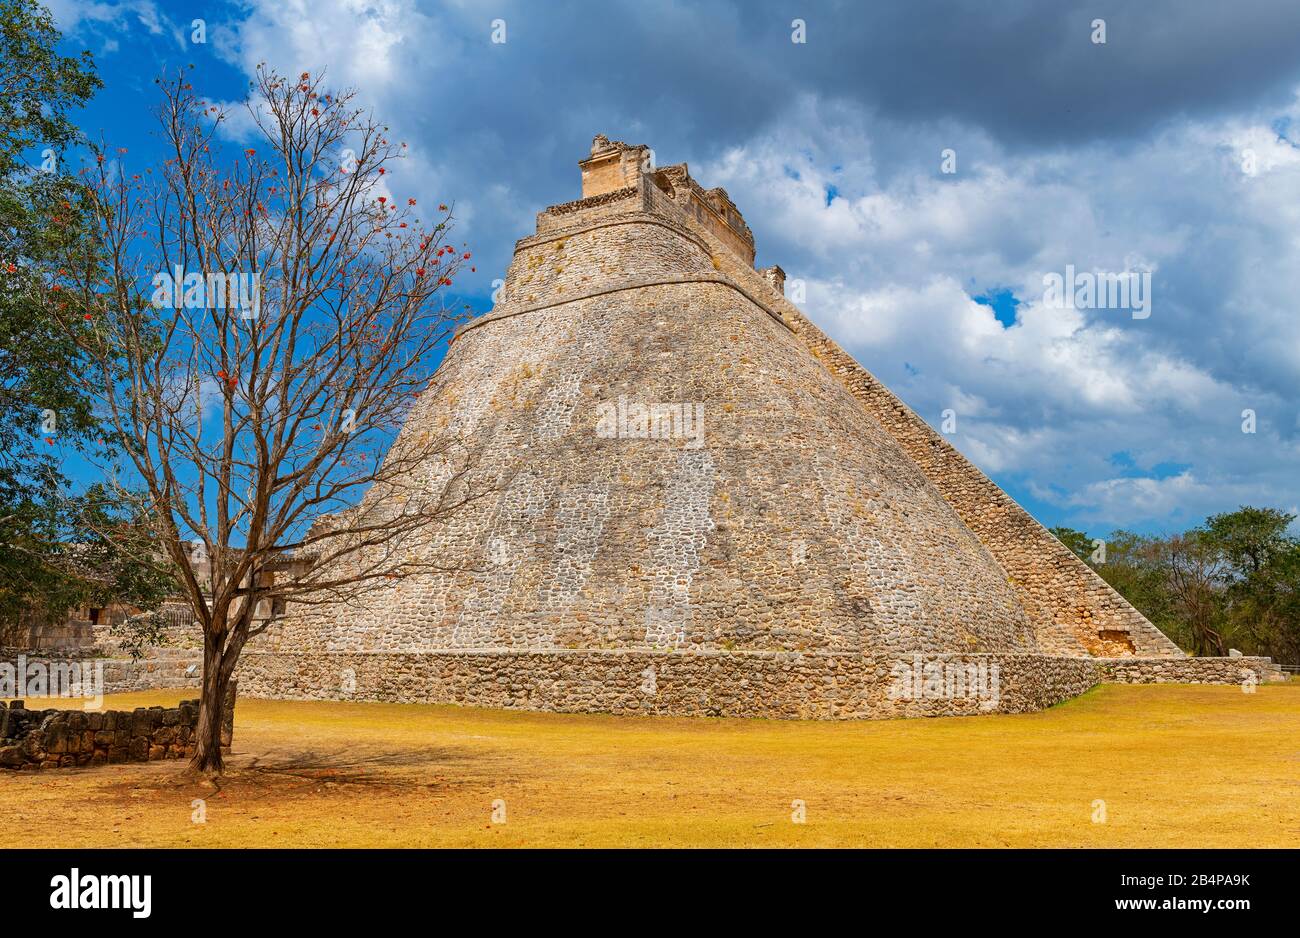 Die majestätische Pyramide des Magiers in der maya-archäologischen Stätte von Uxmal bei Merida, Yucatan-Halbinsel, Mexiko. Stockfoto